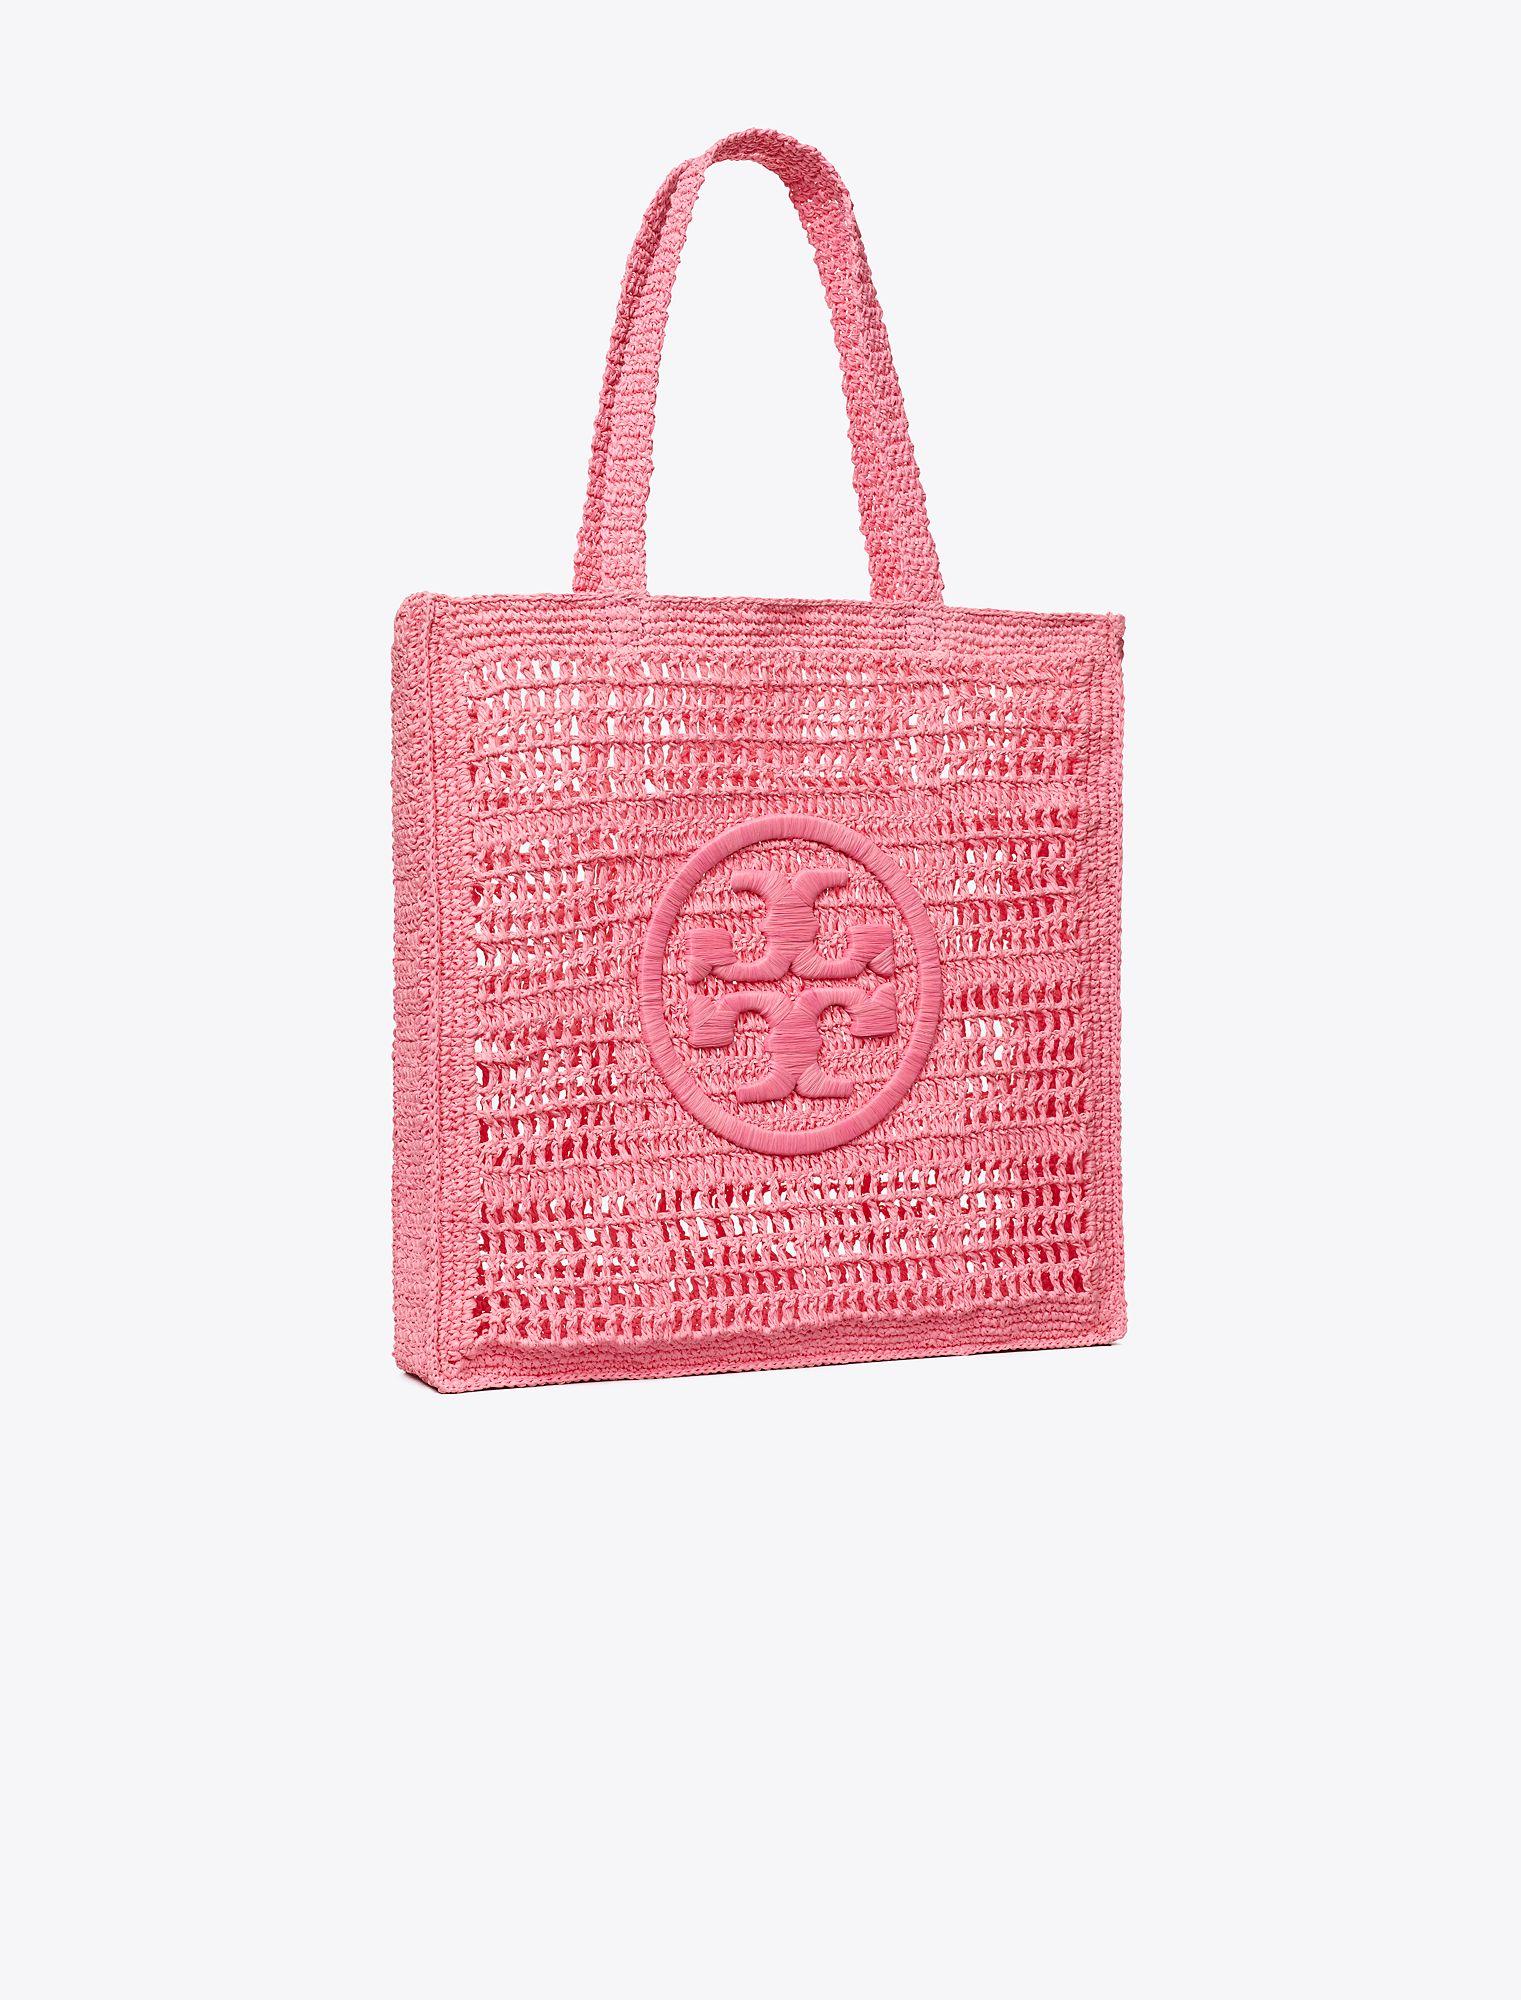 Pink Tory Burch Handbags - Bloomingdale's